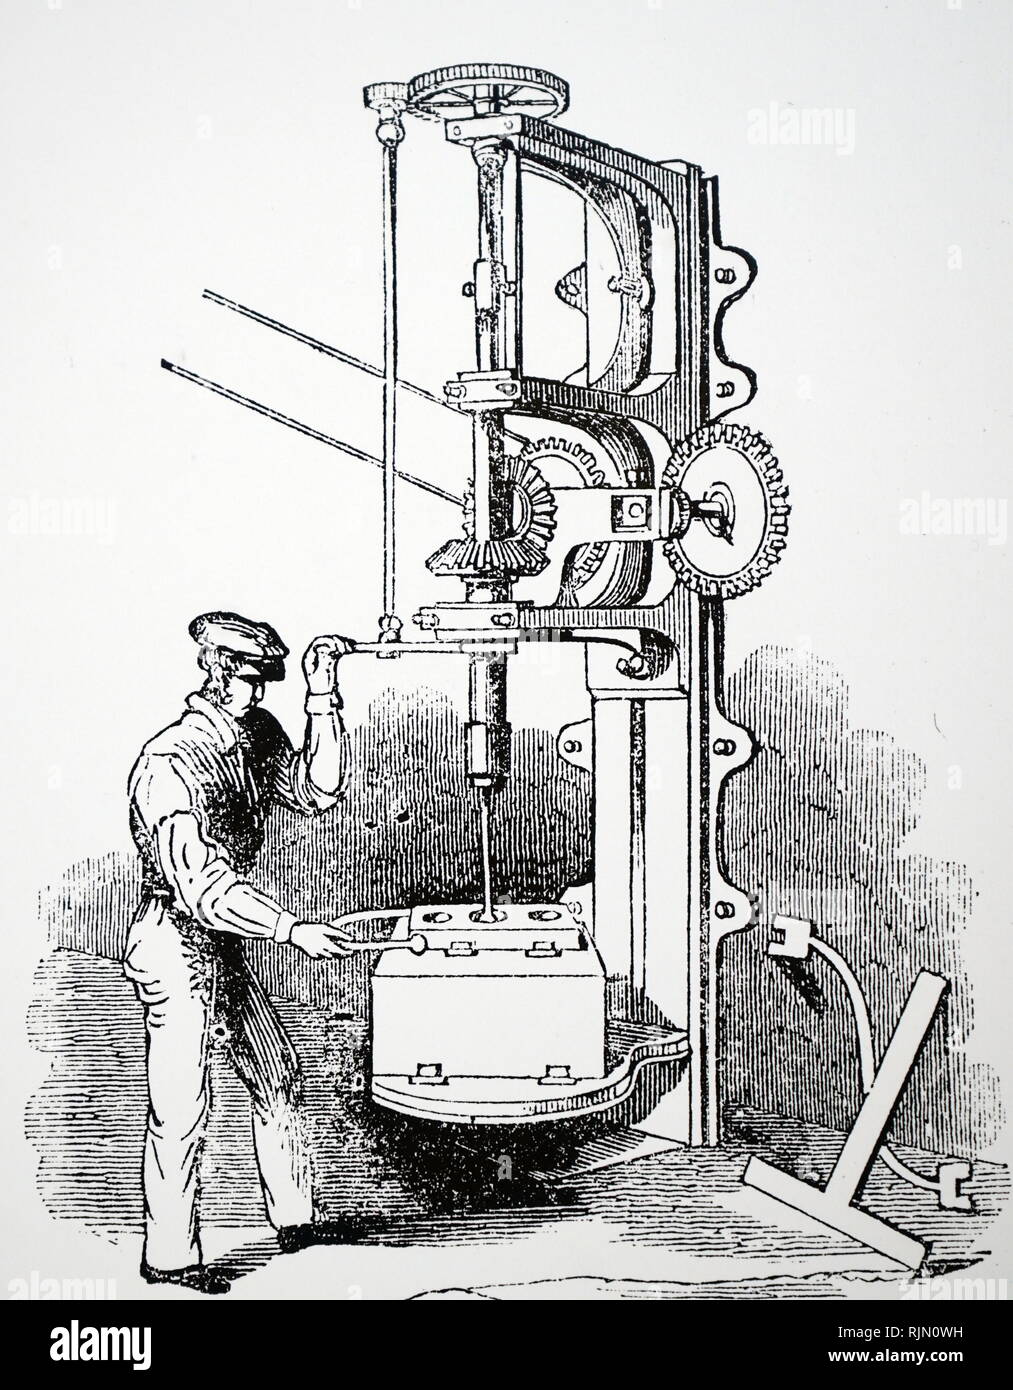 Abbildung: Maschine zum Bohren Sie die Zylinder von Dampfmaschinen, Vulcan Gießerei, Washington Street, Glasgow, Schottland, 1843 Stockfoto